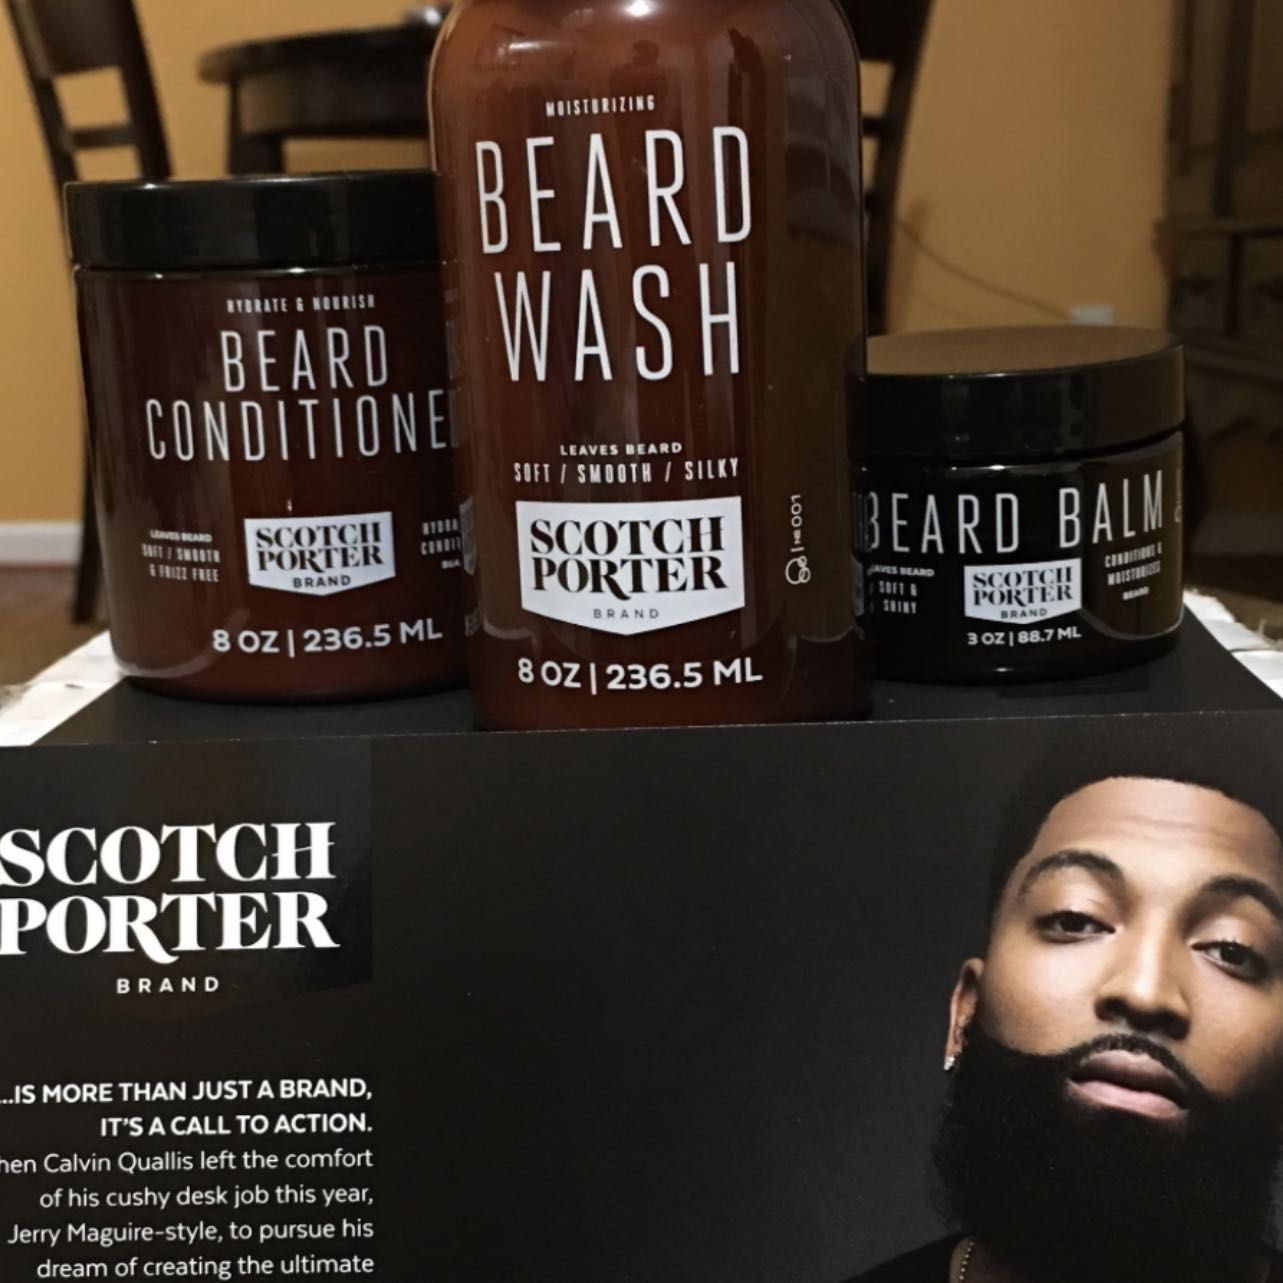 Scotch Porter beard shampoo,conditioner service portfolio